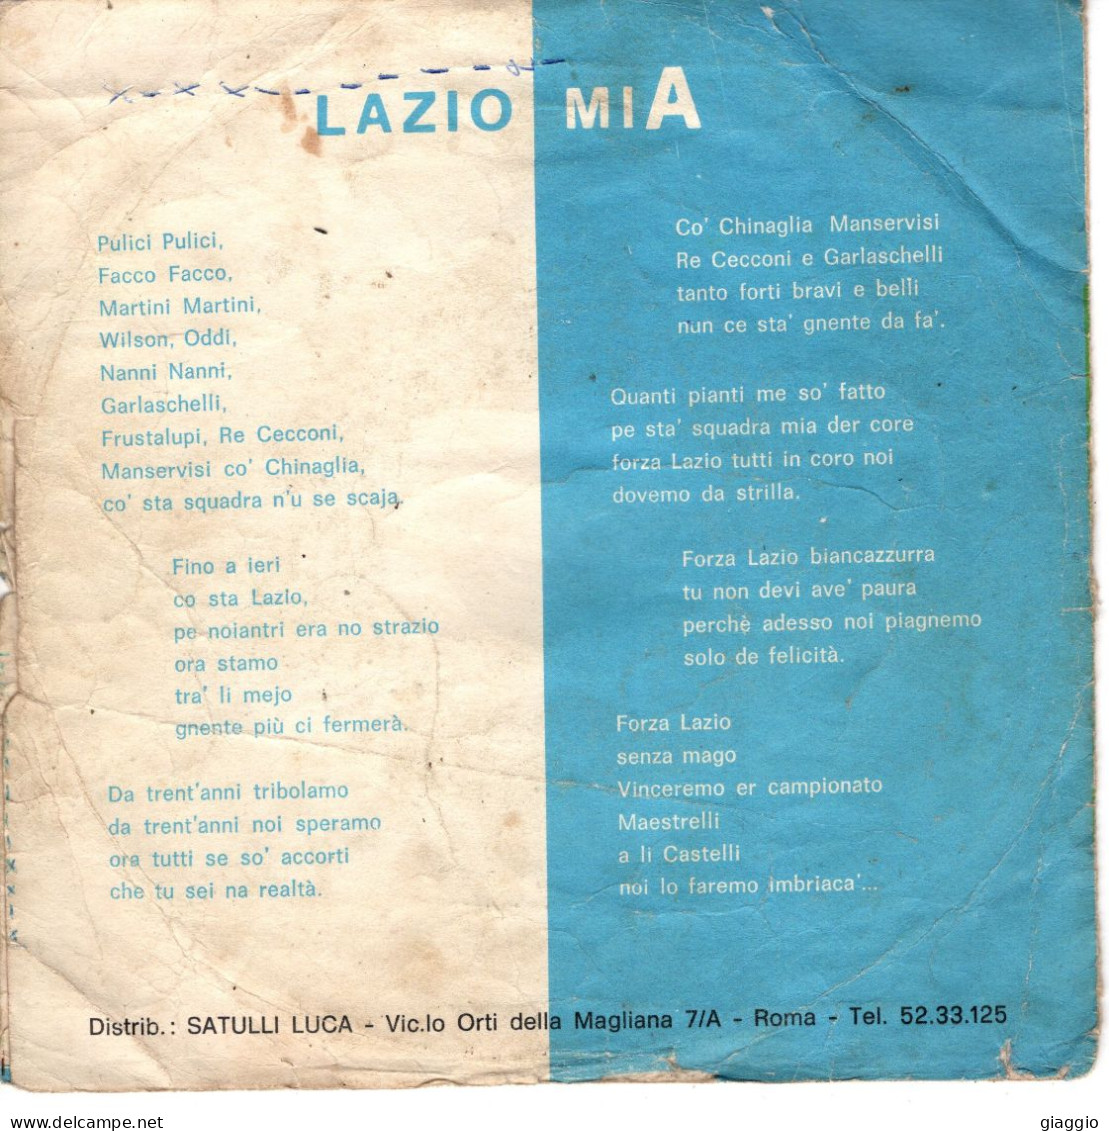 °°° 587) 45 GIRI - S. SILVESTRI - LAZIO MIA / INNO DI MAMELI °°° - Sonstige - Italienische Musik